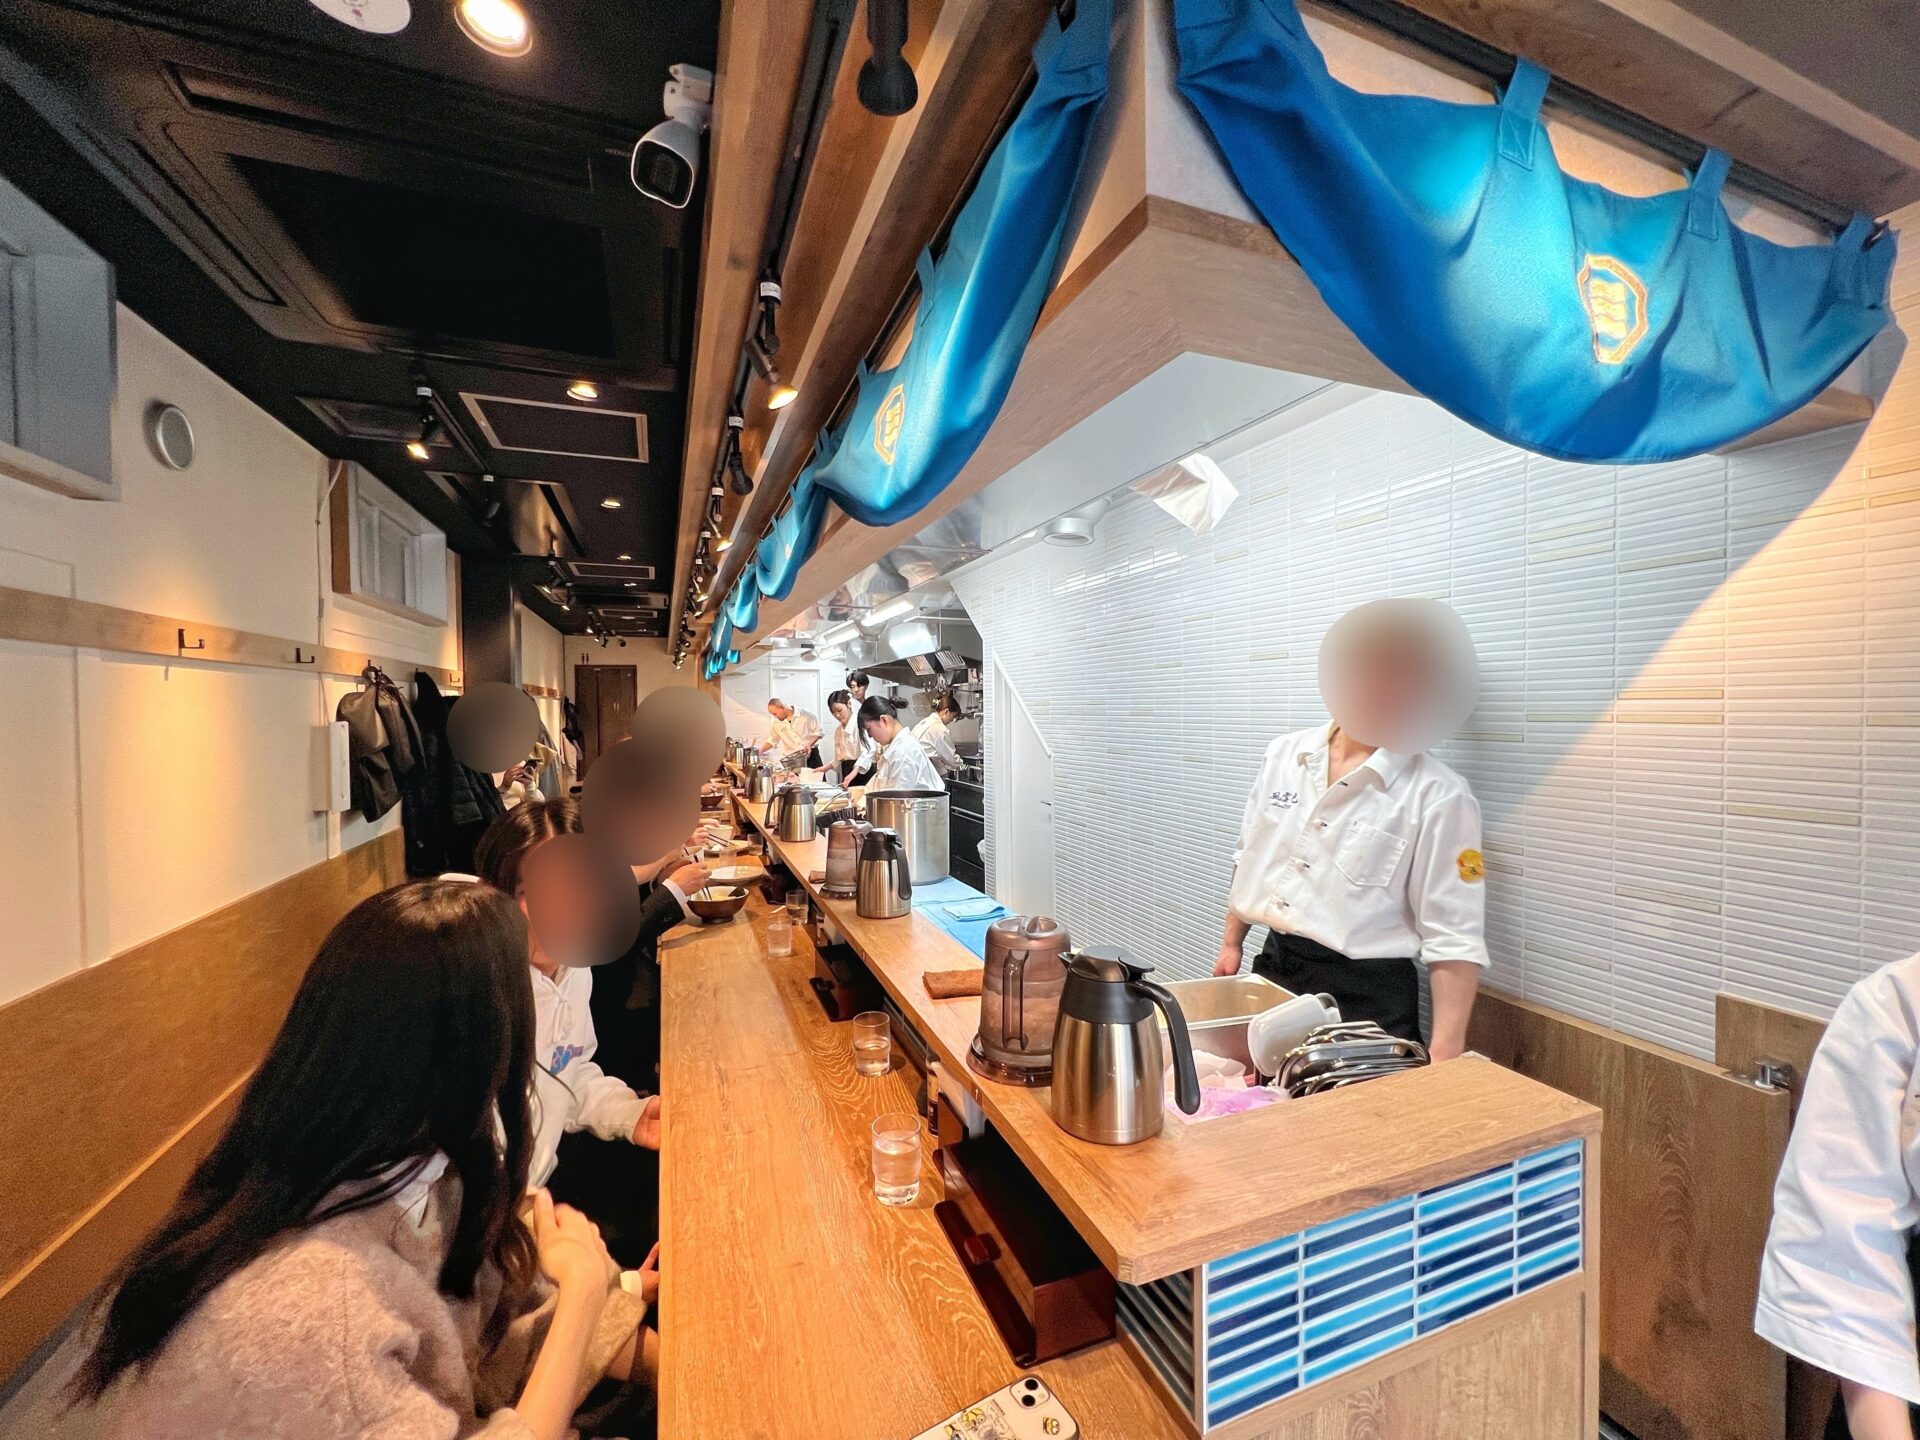 新店「風雲児 大宮店」駅前に新宿の超有名つけ麺屋が開店したので得製つけ麺を食べてきた